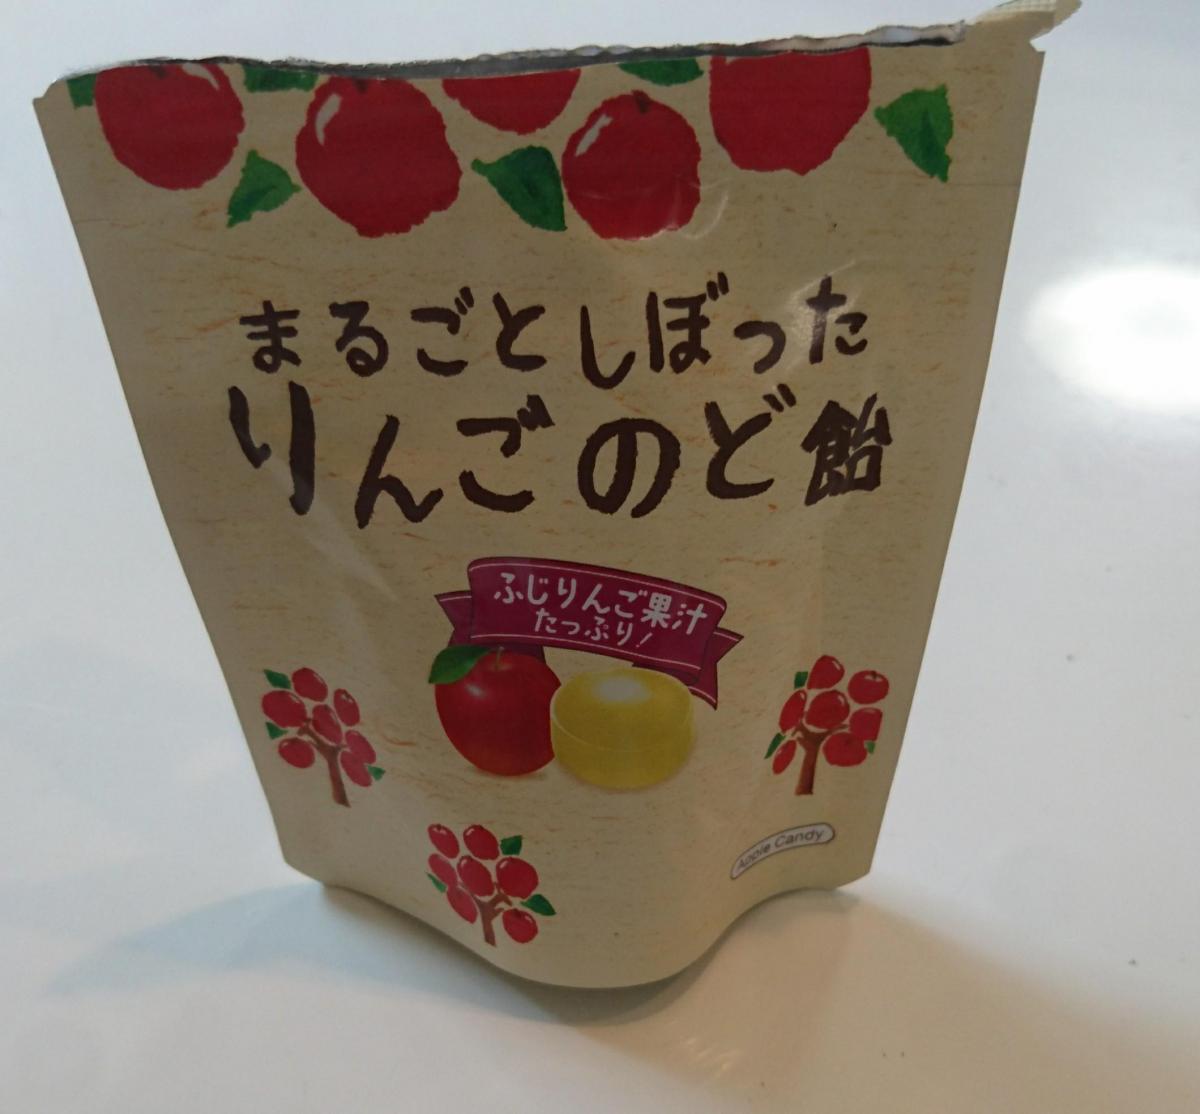 カンロ まるごとしぼったりんごのど飴 限定販売 の商品ページ